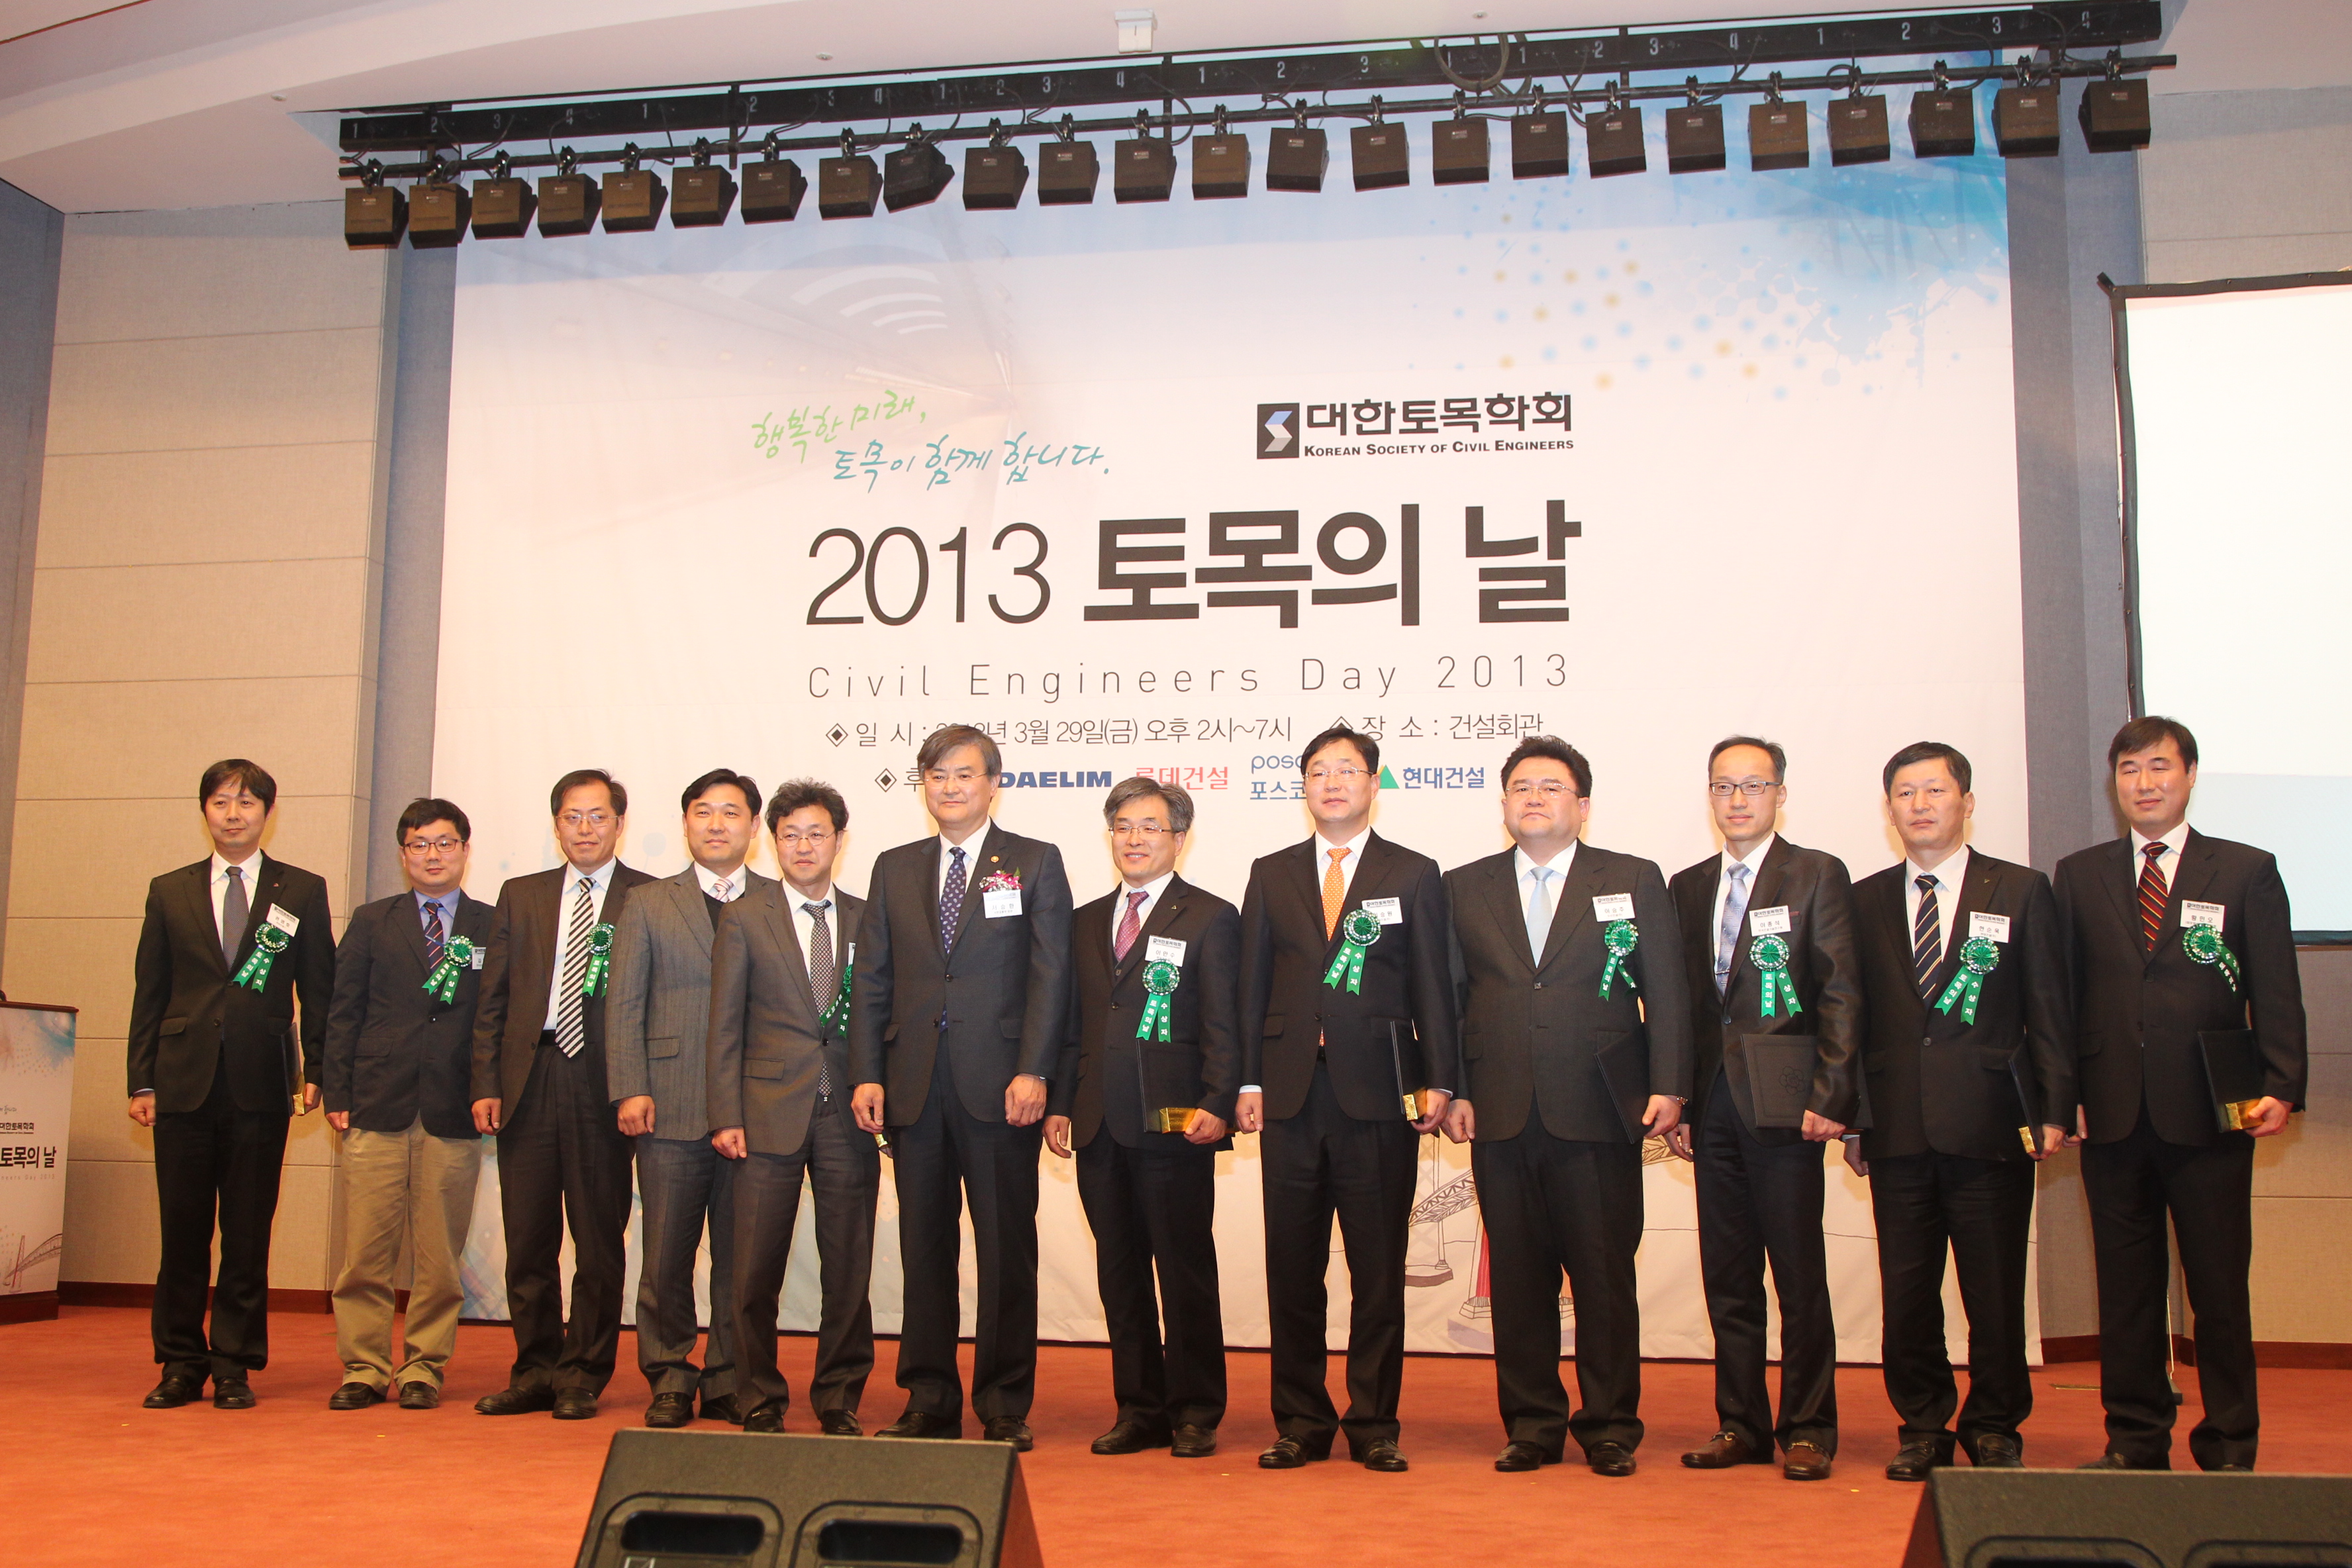 2013 토목의 날 행사에 참석한 서승환 장관 - 포토이미지